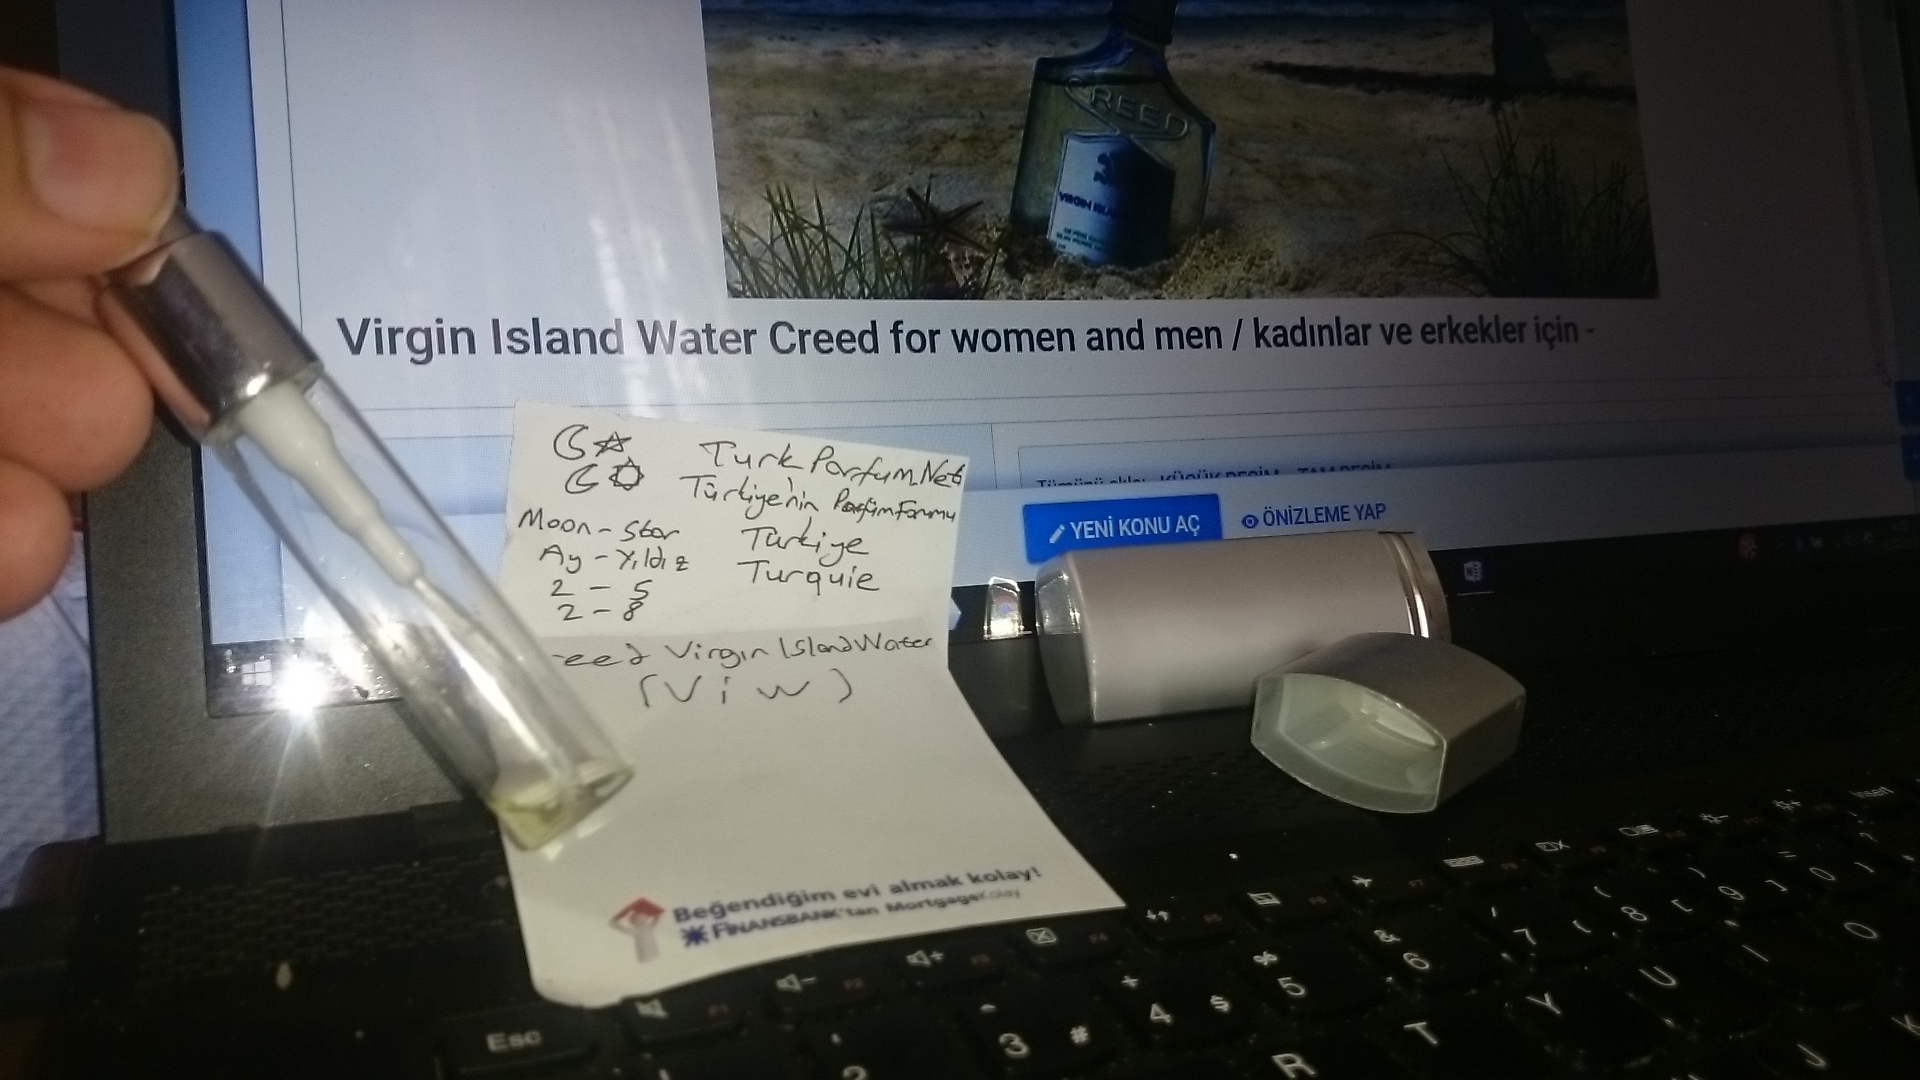 Virgin Island Water Creed for women and men baykalbul dekant şişesi özel DSC_1606.JPG